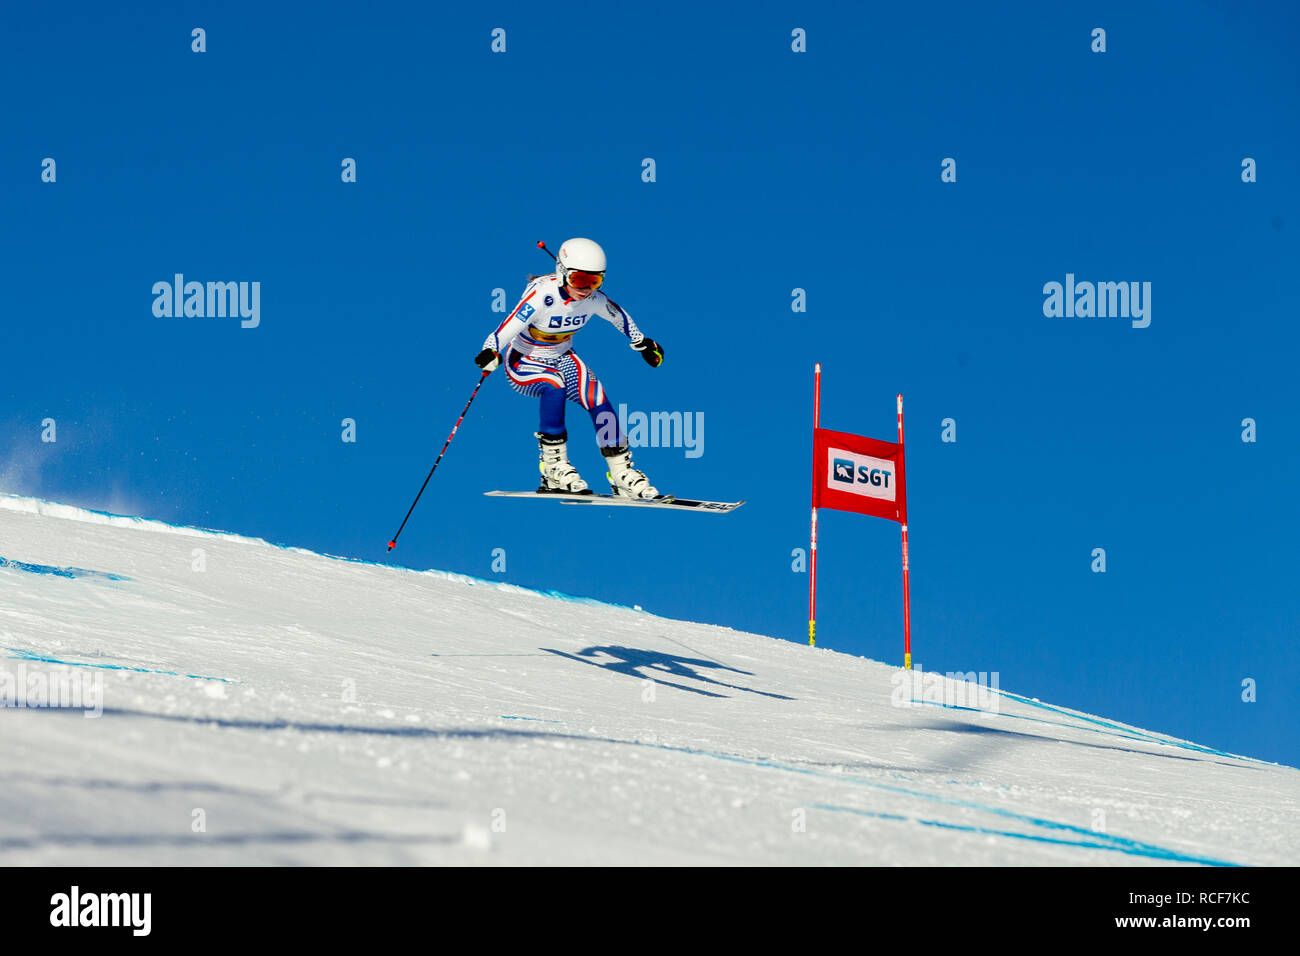 Magnitogorsk, Russia - 18 dicembre 2018: le donne atleta racer in piste per lo sci di fondo durante il campionato nazionale di sci alpino Foto Stock